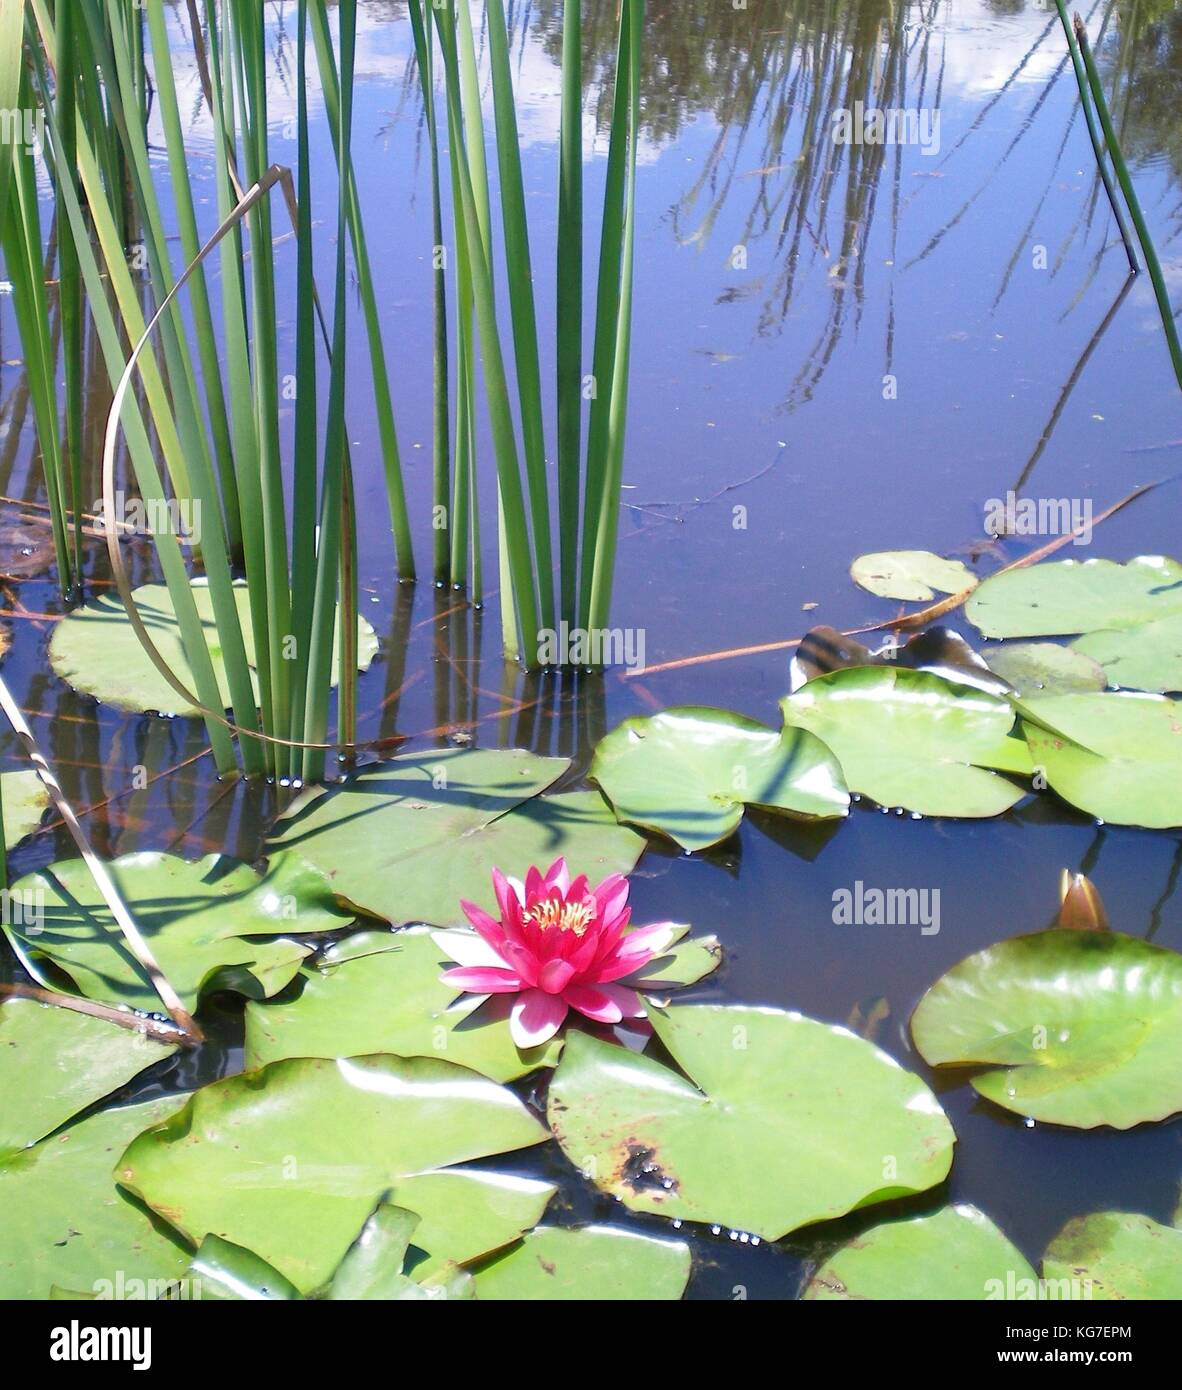 Una rosa de agua rodeado por flores de Lilly lilly pastillas y carrizos. El reflejo de juncos distantes pueden sen en el agua. Foto de stock